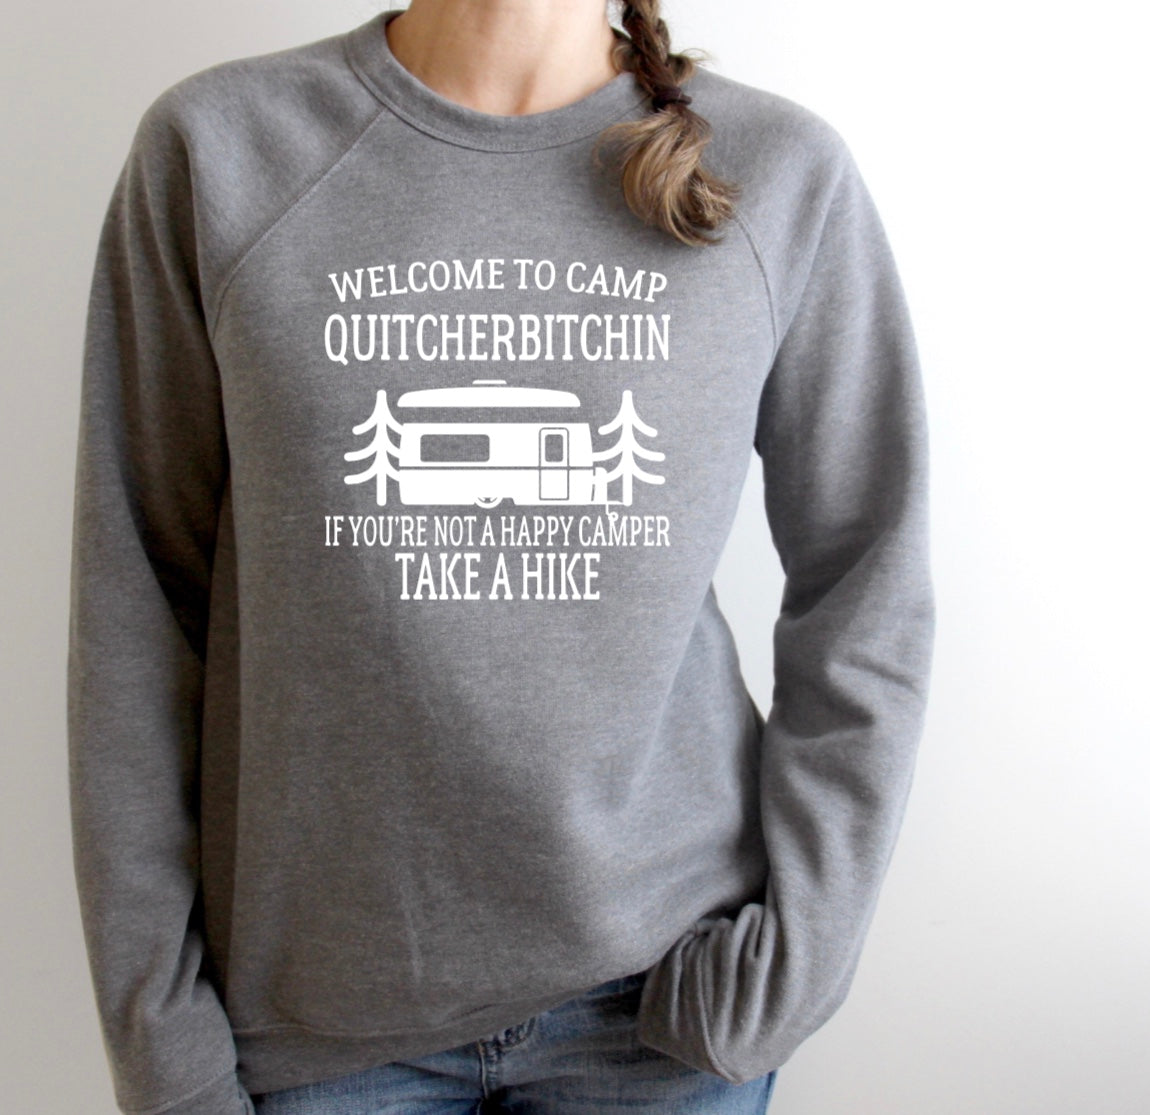 Camp Quitcherbitchin crew neck sweatshirt 